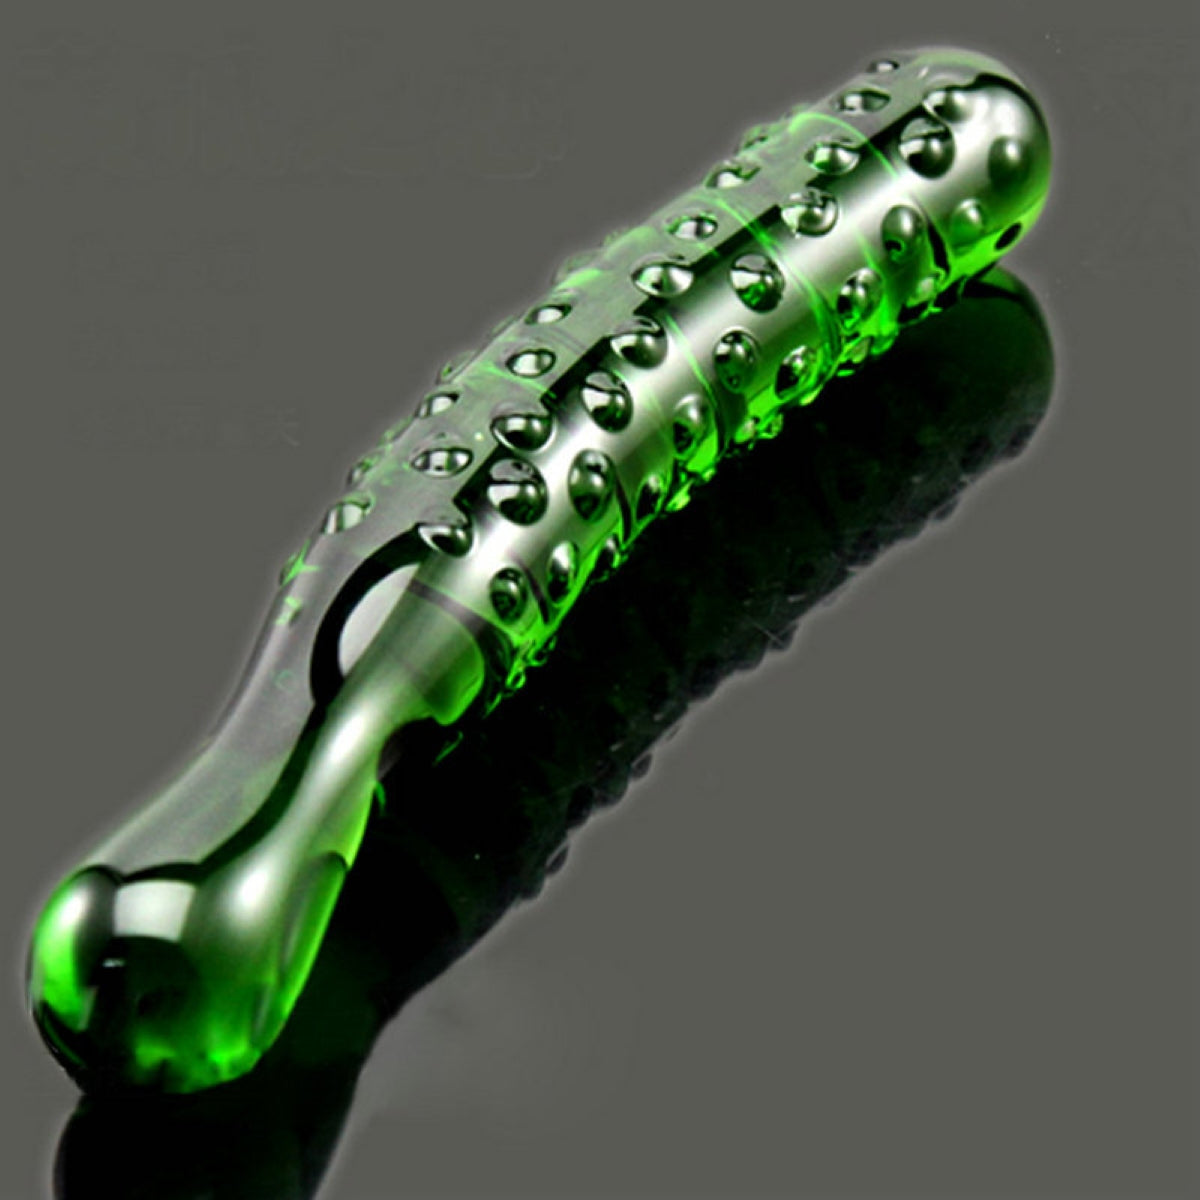 Cucumber Butt Plug Anal Textured Green Glass Dildo